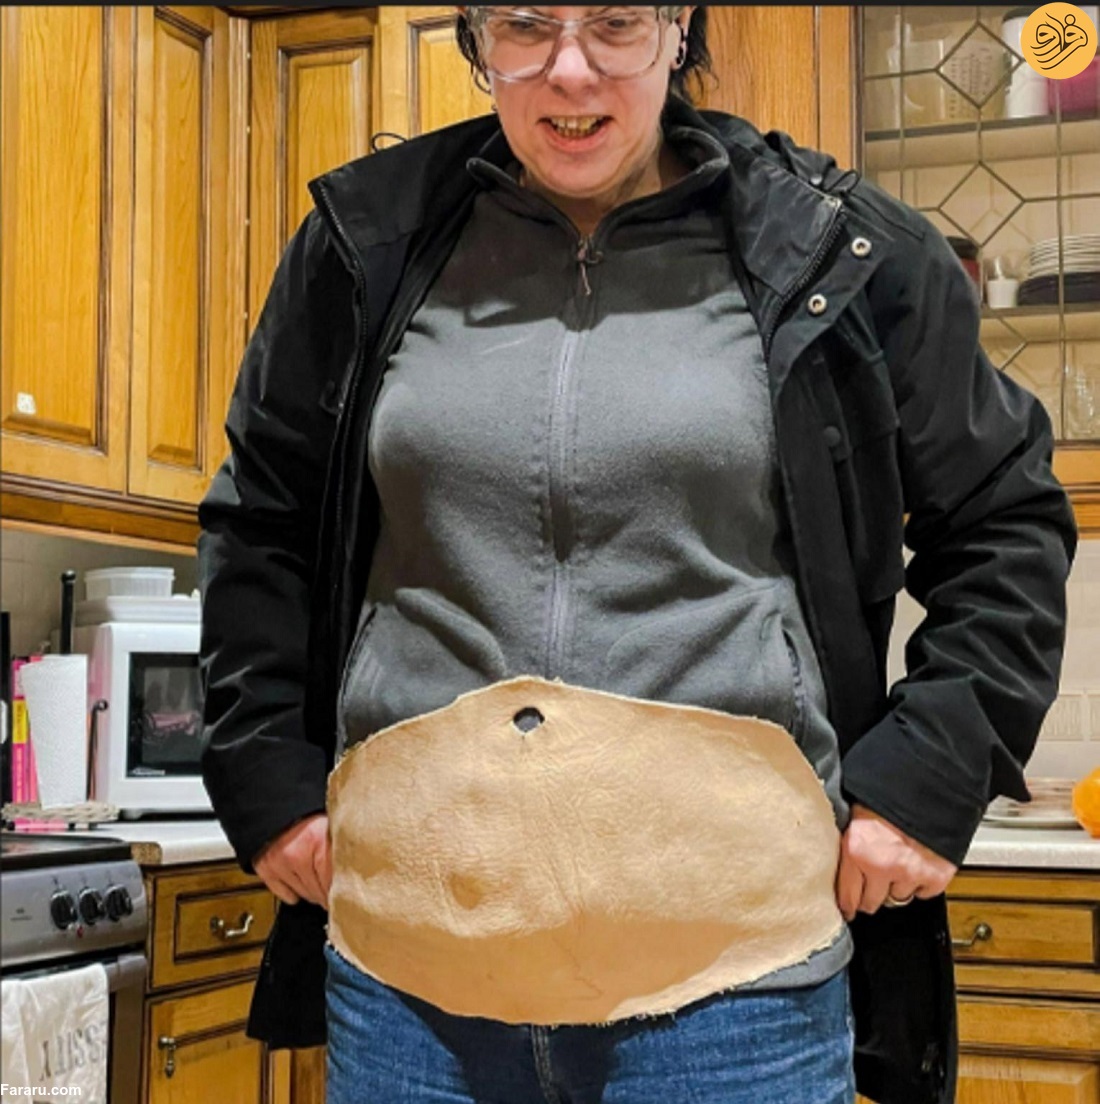 یک زن پوست شکم خود را به چرم انسانی تبدیل کرد! (+عکس)